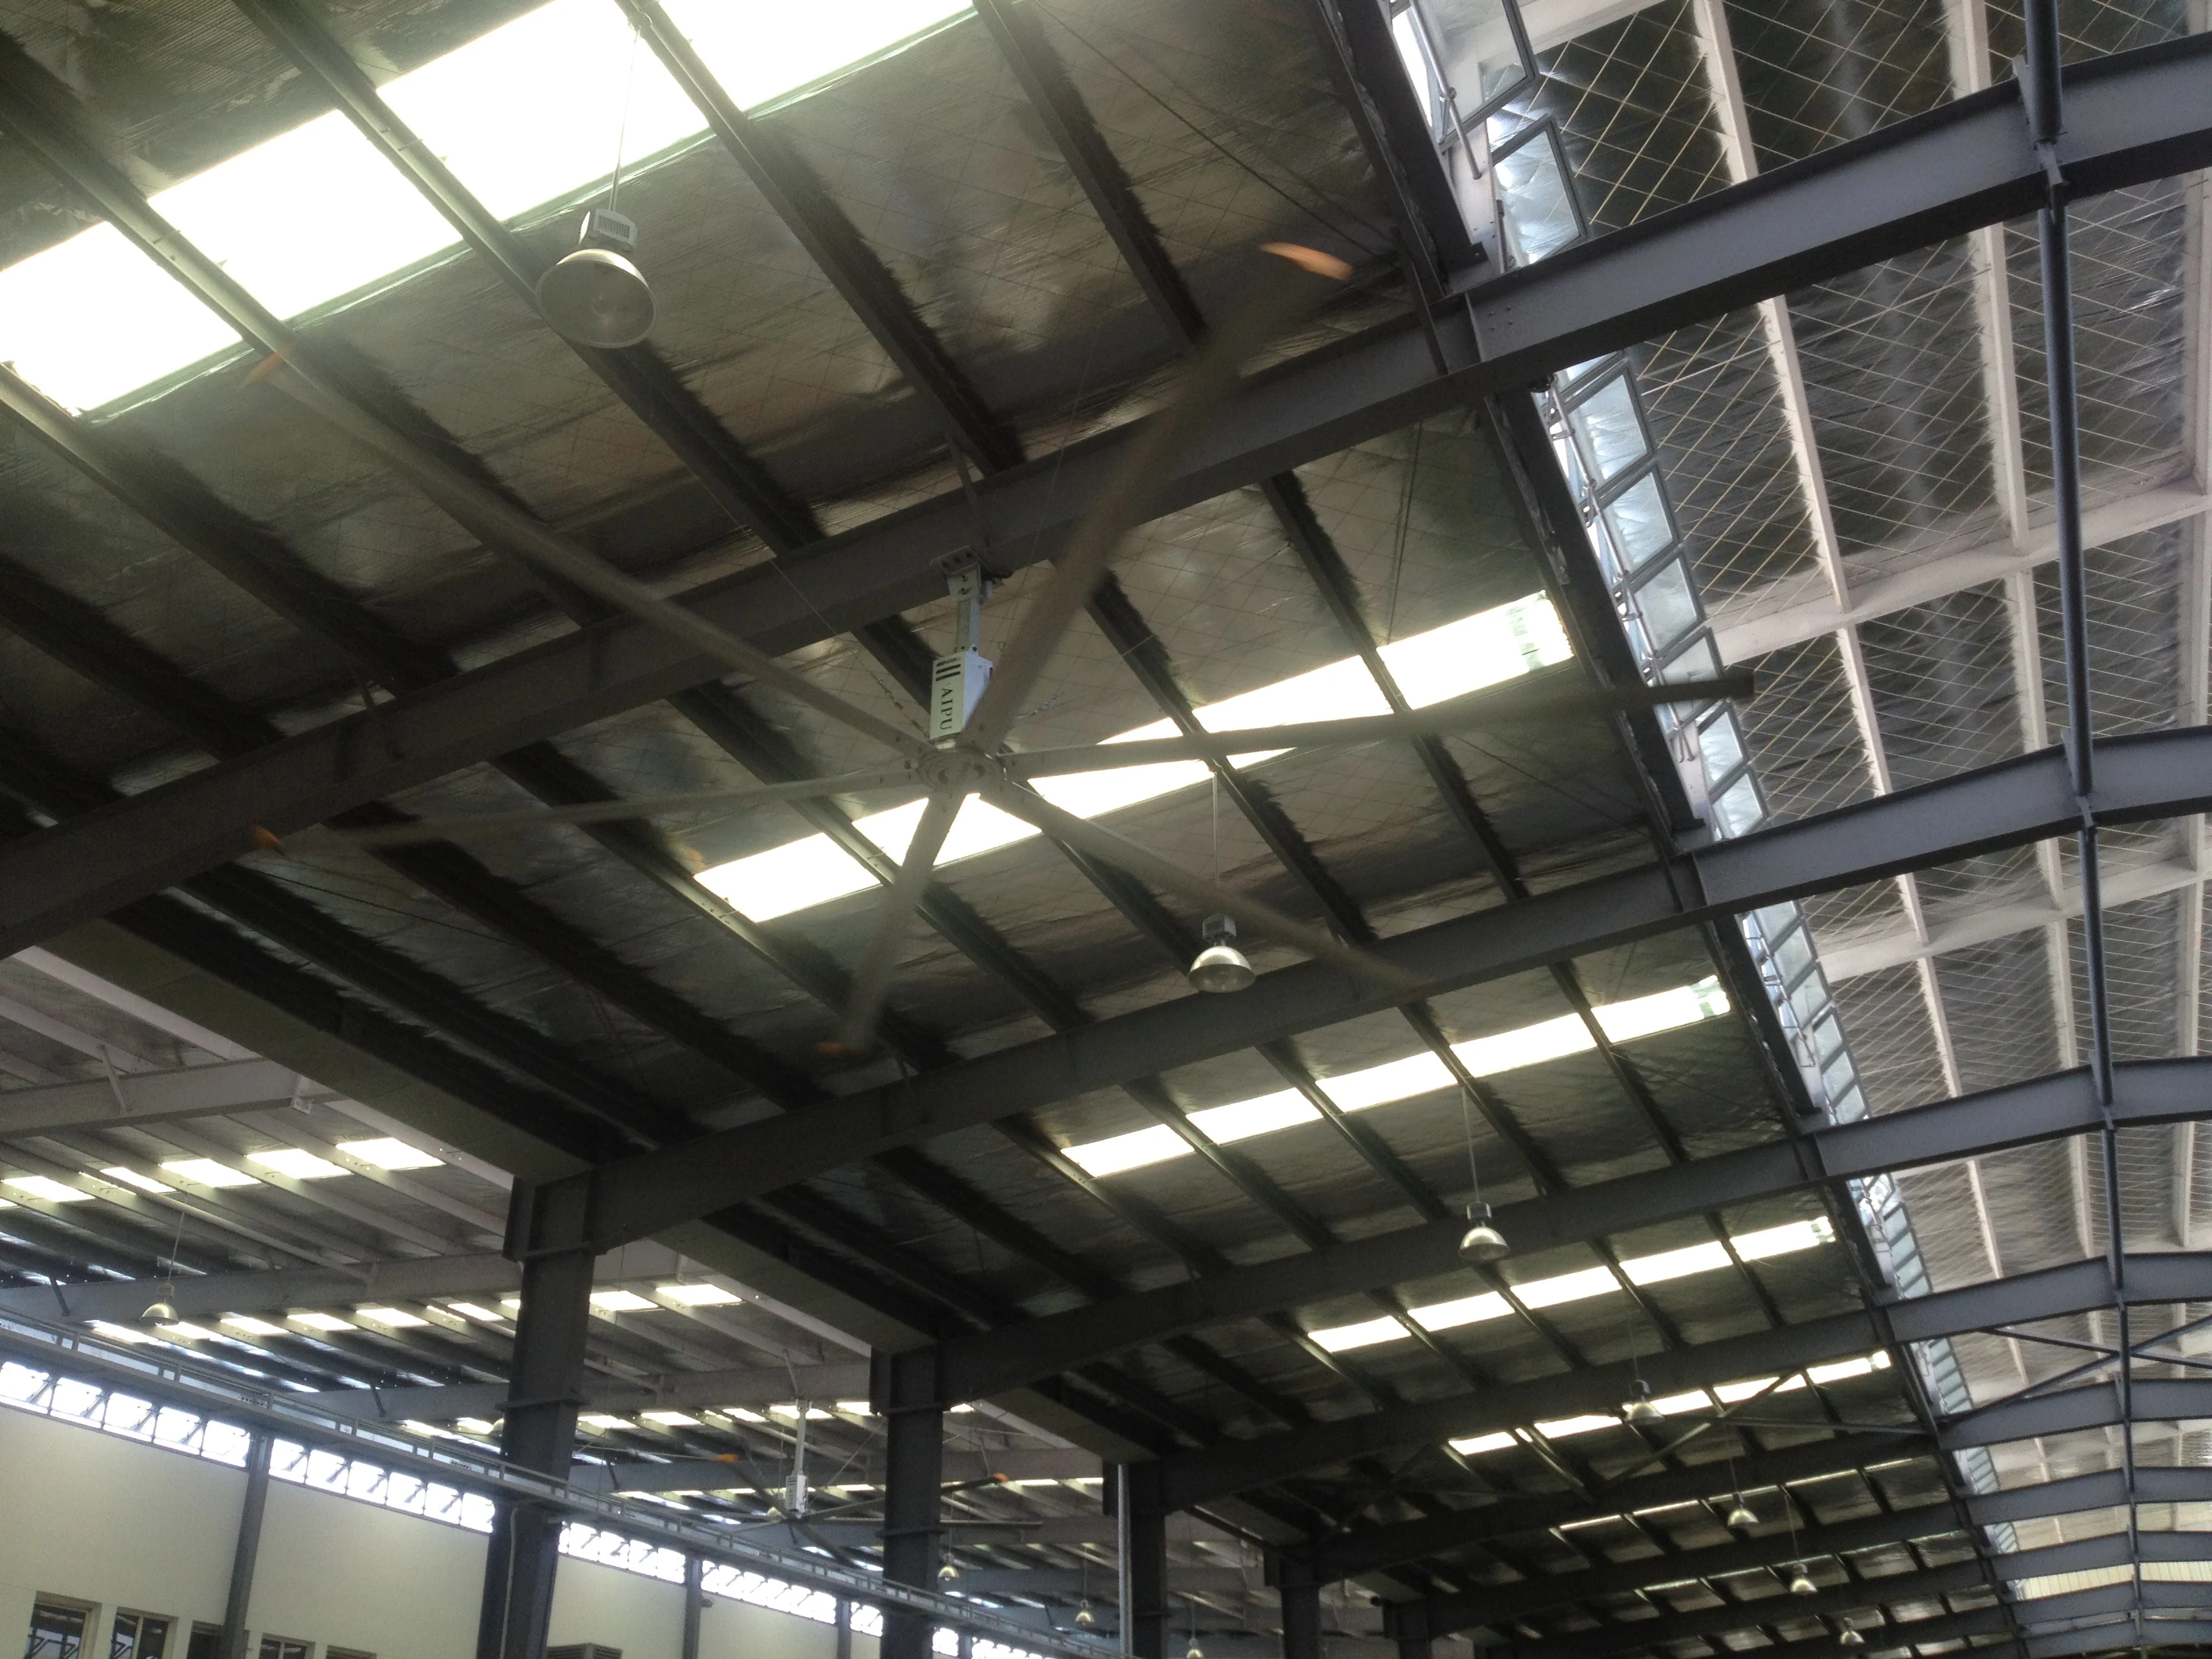 
Factory Workshop 6.6 meter 22FT hvls big industrial fan ceiling fan ventilation 